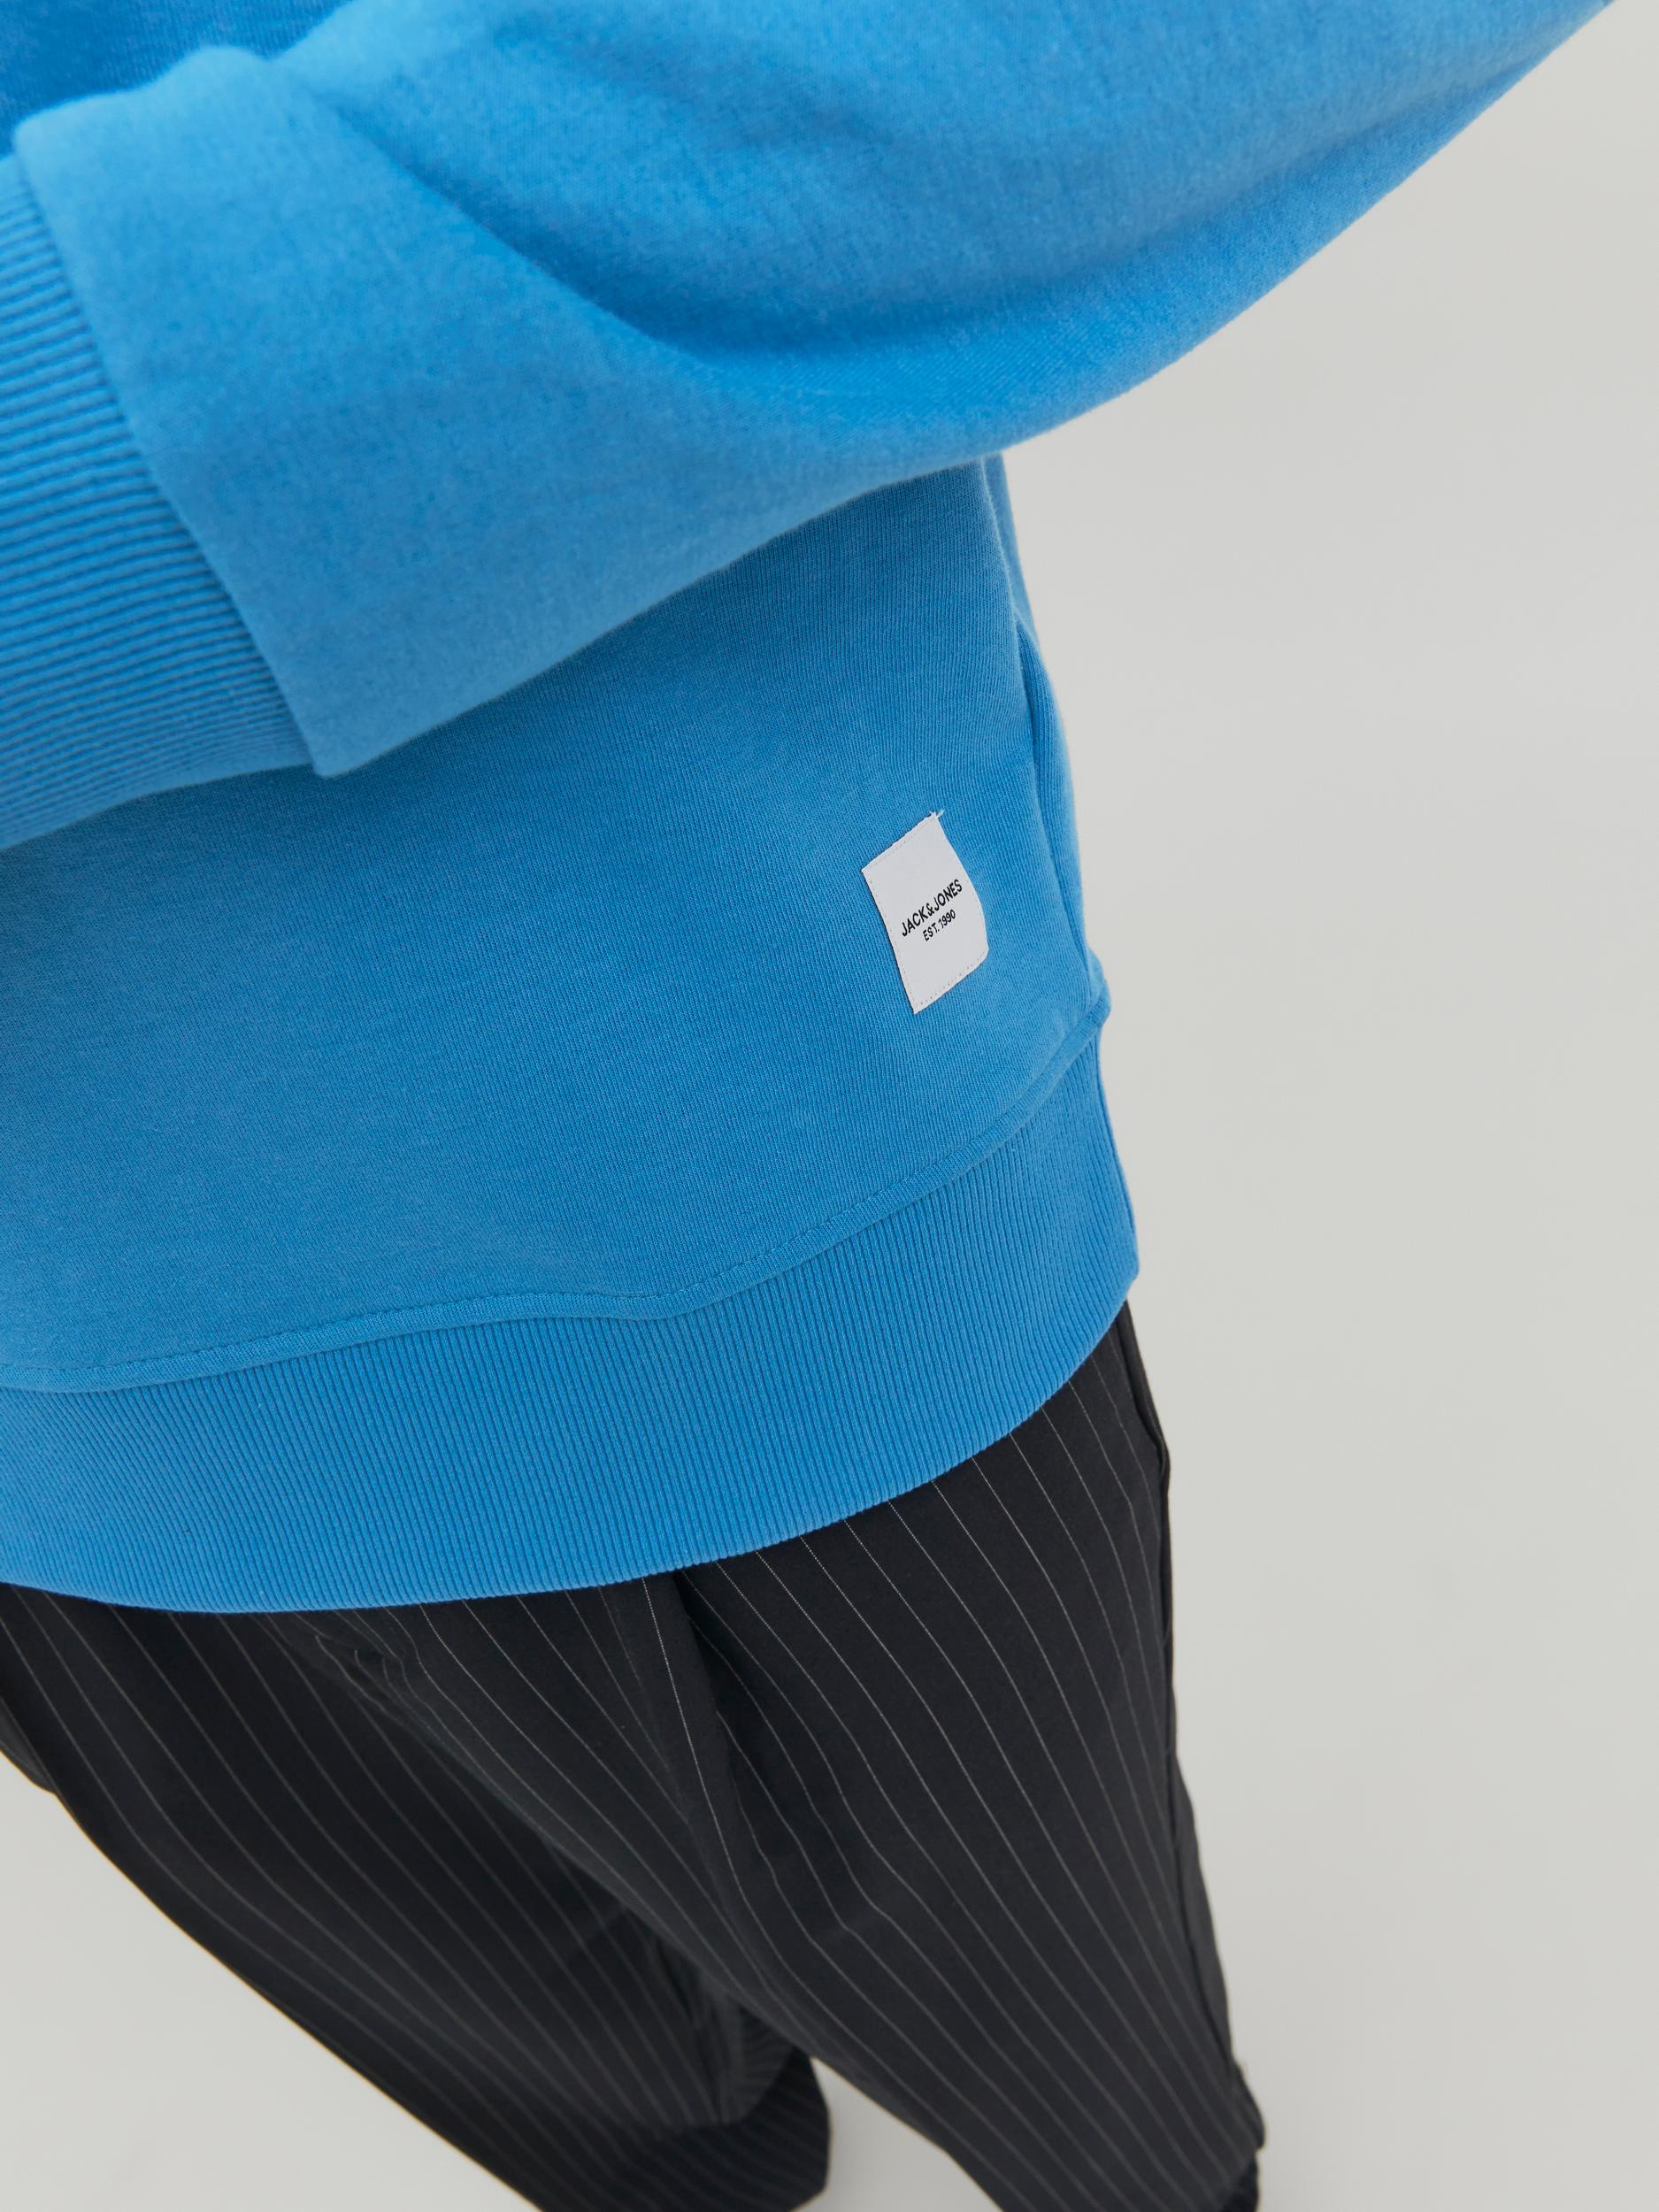 Jack & Jones - Regular-fit pullover, Light Blue, large image number 5